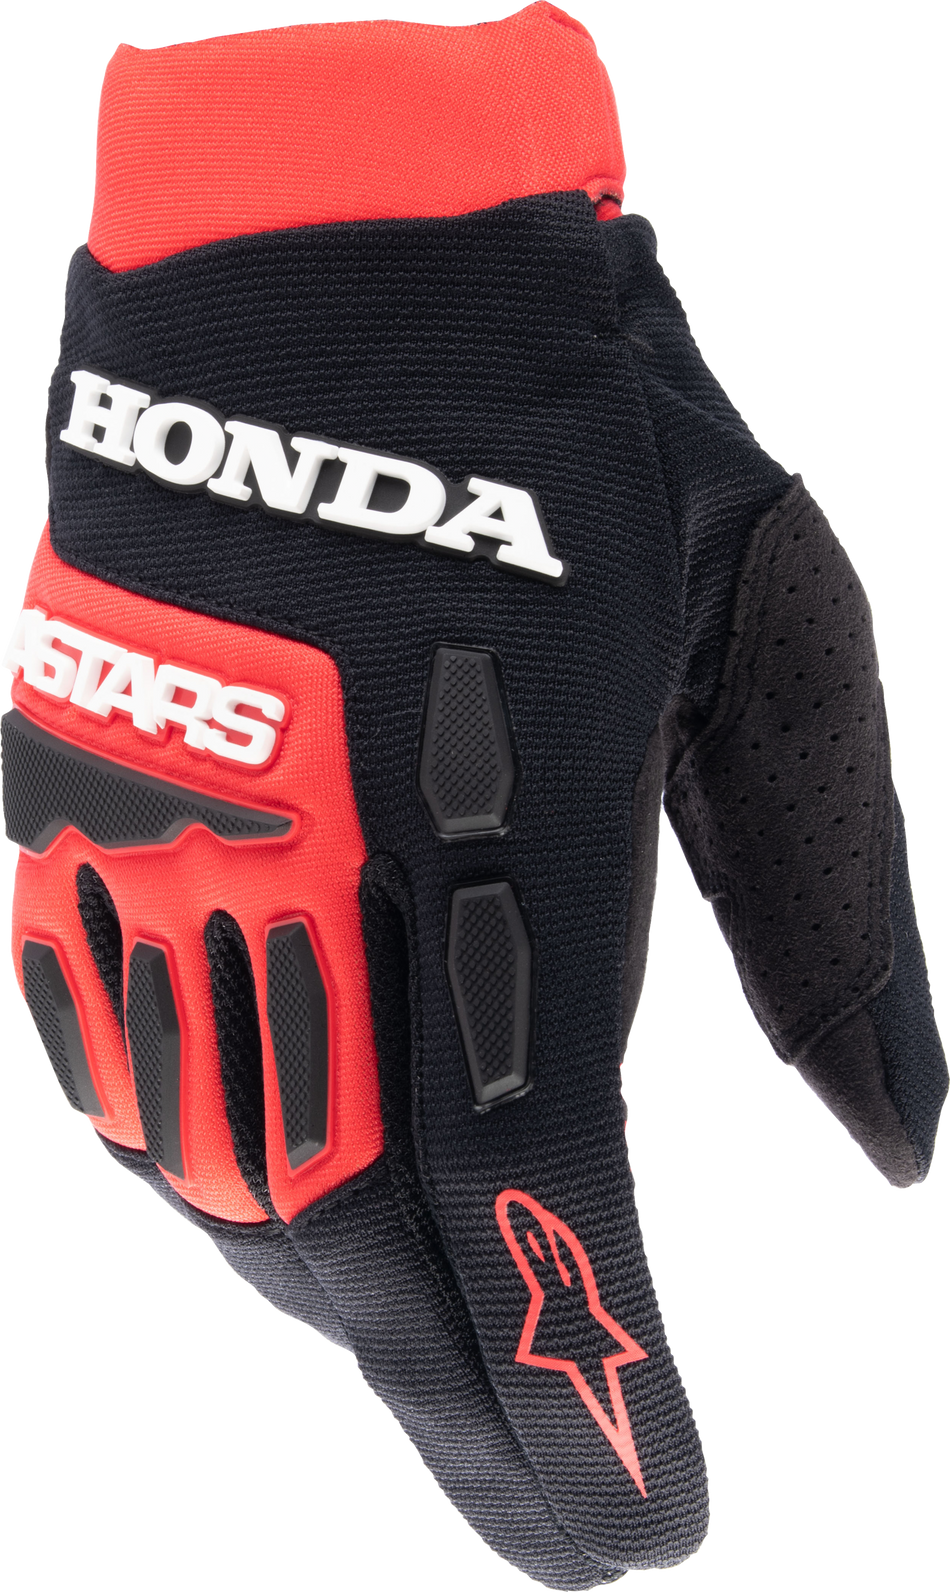 ALPINESTARS Honda Full Bore Gloves Bright Red/Black Xl 3563823-3031-XL